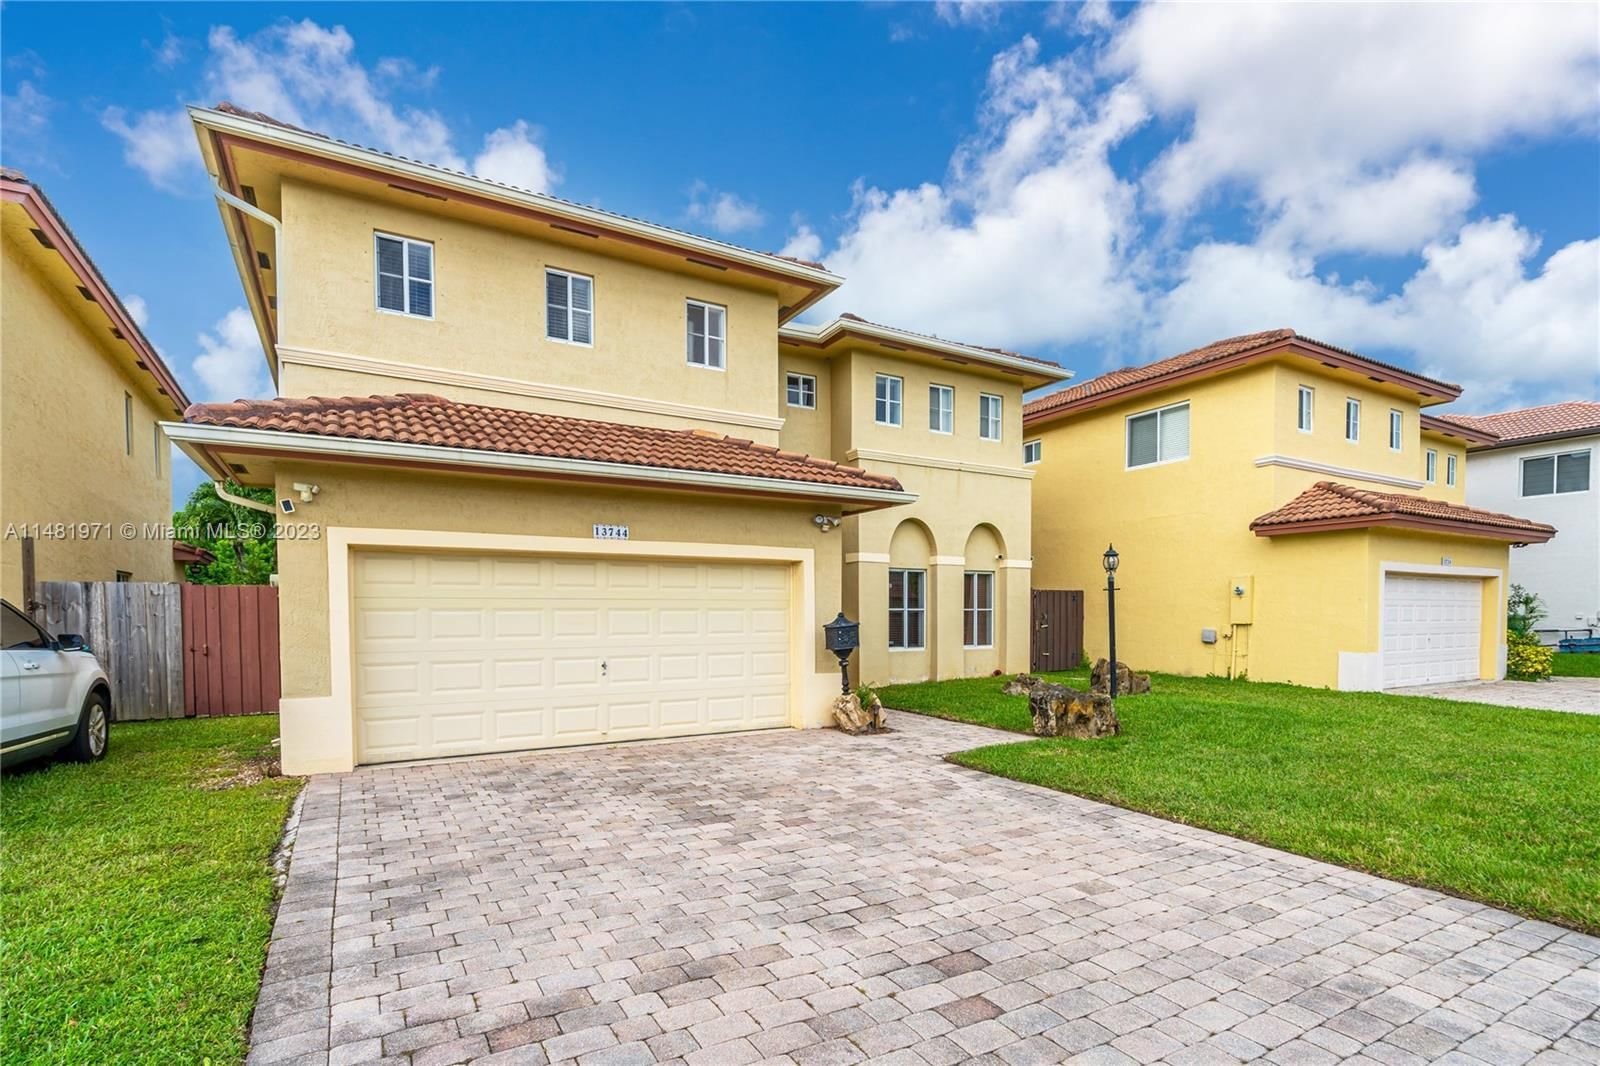 Real estate property located at 13744 124th Ave Rd, Miami-Dade County, CARIBE AT BONITA LAKES, Miami, FL